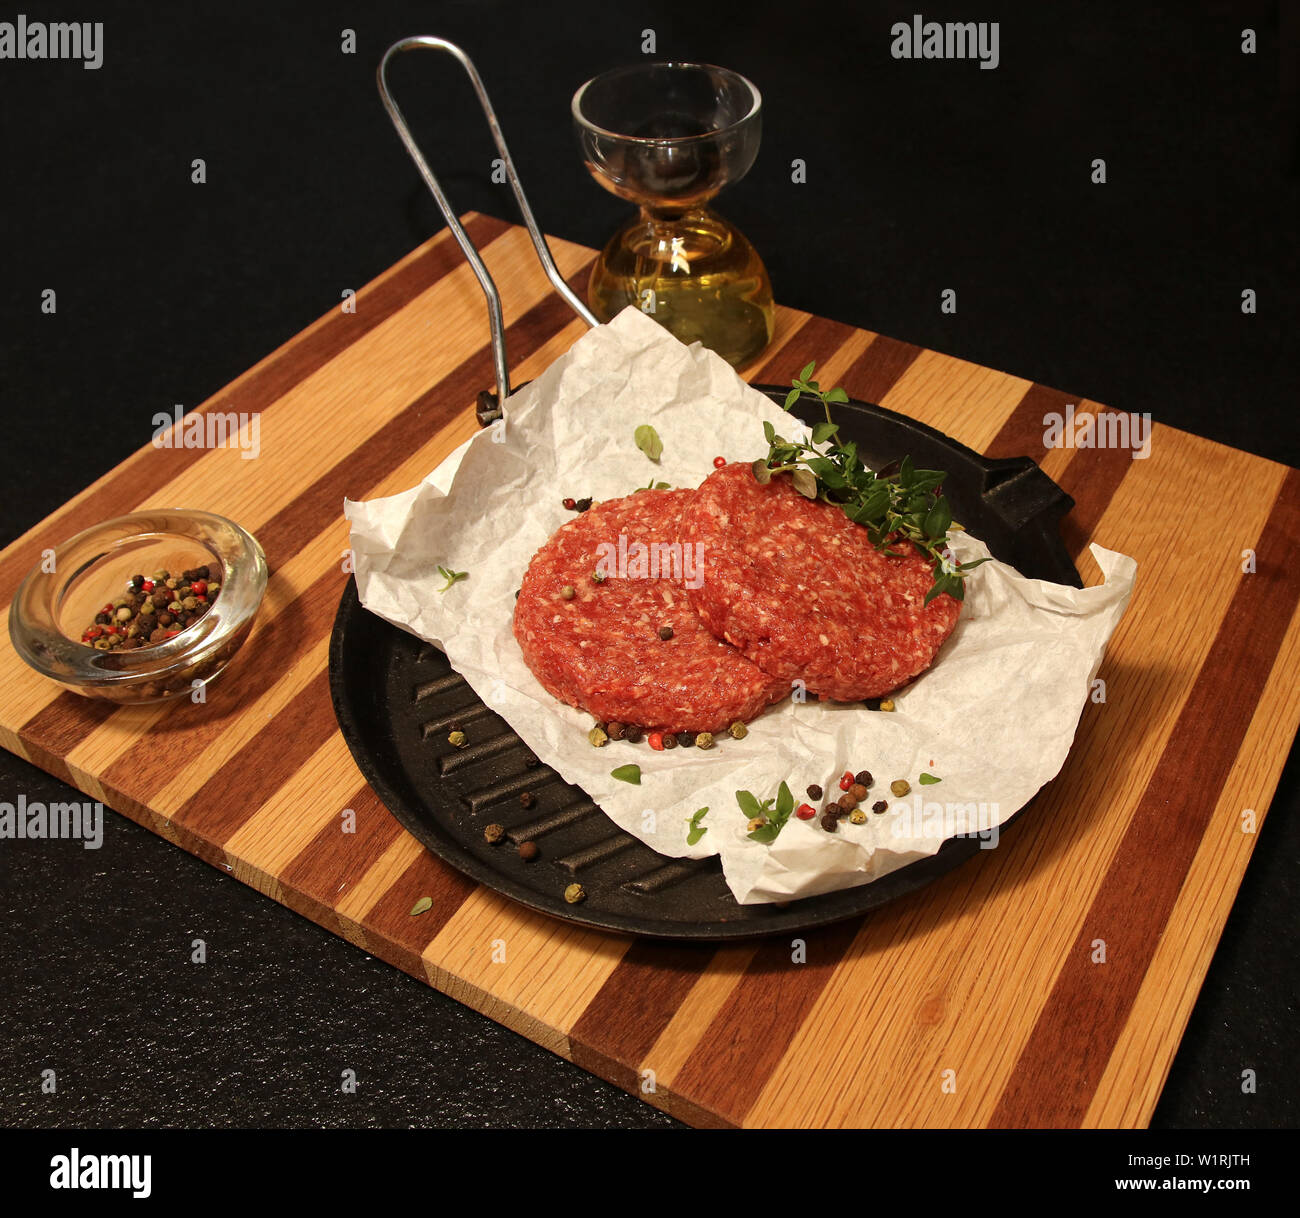 Deux hamburgers de bœuf sur une poêle sur une planche en bois avec un fond noir. Banque D'Images